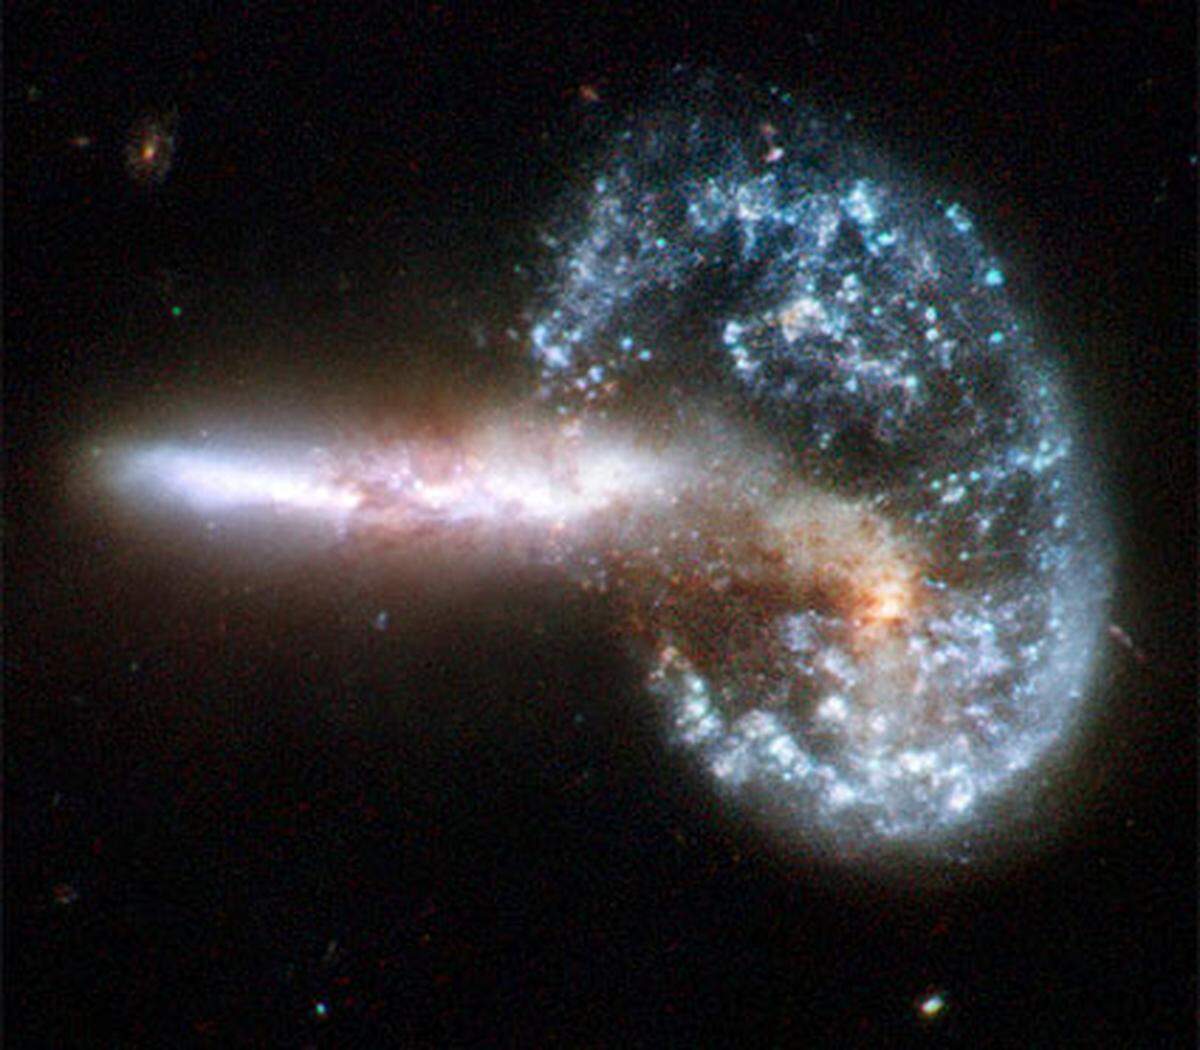 Anlässlich des 18. Geburtstags des Weltraumteleskops Hubble hat die NASA neue Bilder von kollidierenden Galaxien veröffentlicht.Die auftretenden Kräfte verformen die Sterngebilde und bringen außergewöhnlich bizarre Formen hervor.Im Bild: Der Zusammenstoß der beiden Galaxien hat eine Schockwelle ausgelöst. Durch den Aufprall hat die rechte Galaxie eine ringförmige Gestalt angenommen. Die Konstellation "Arp 148" ist 500 Millionen Lichjahre von der Erde entfernt.